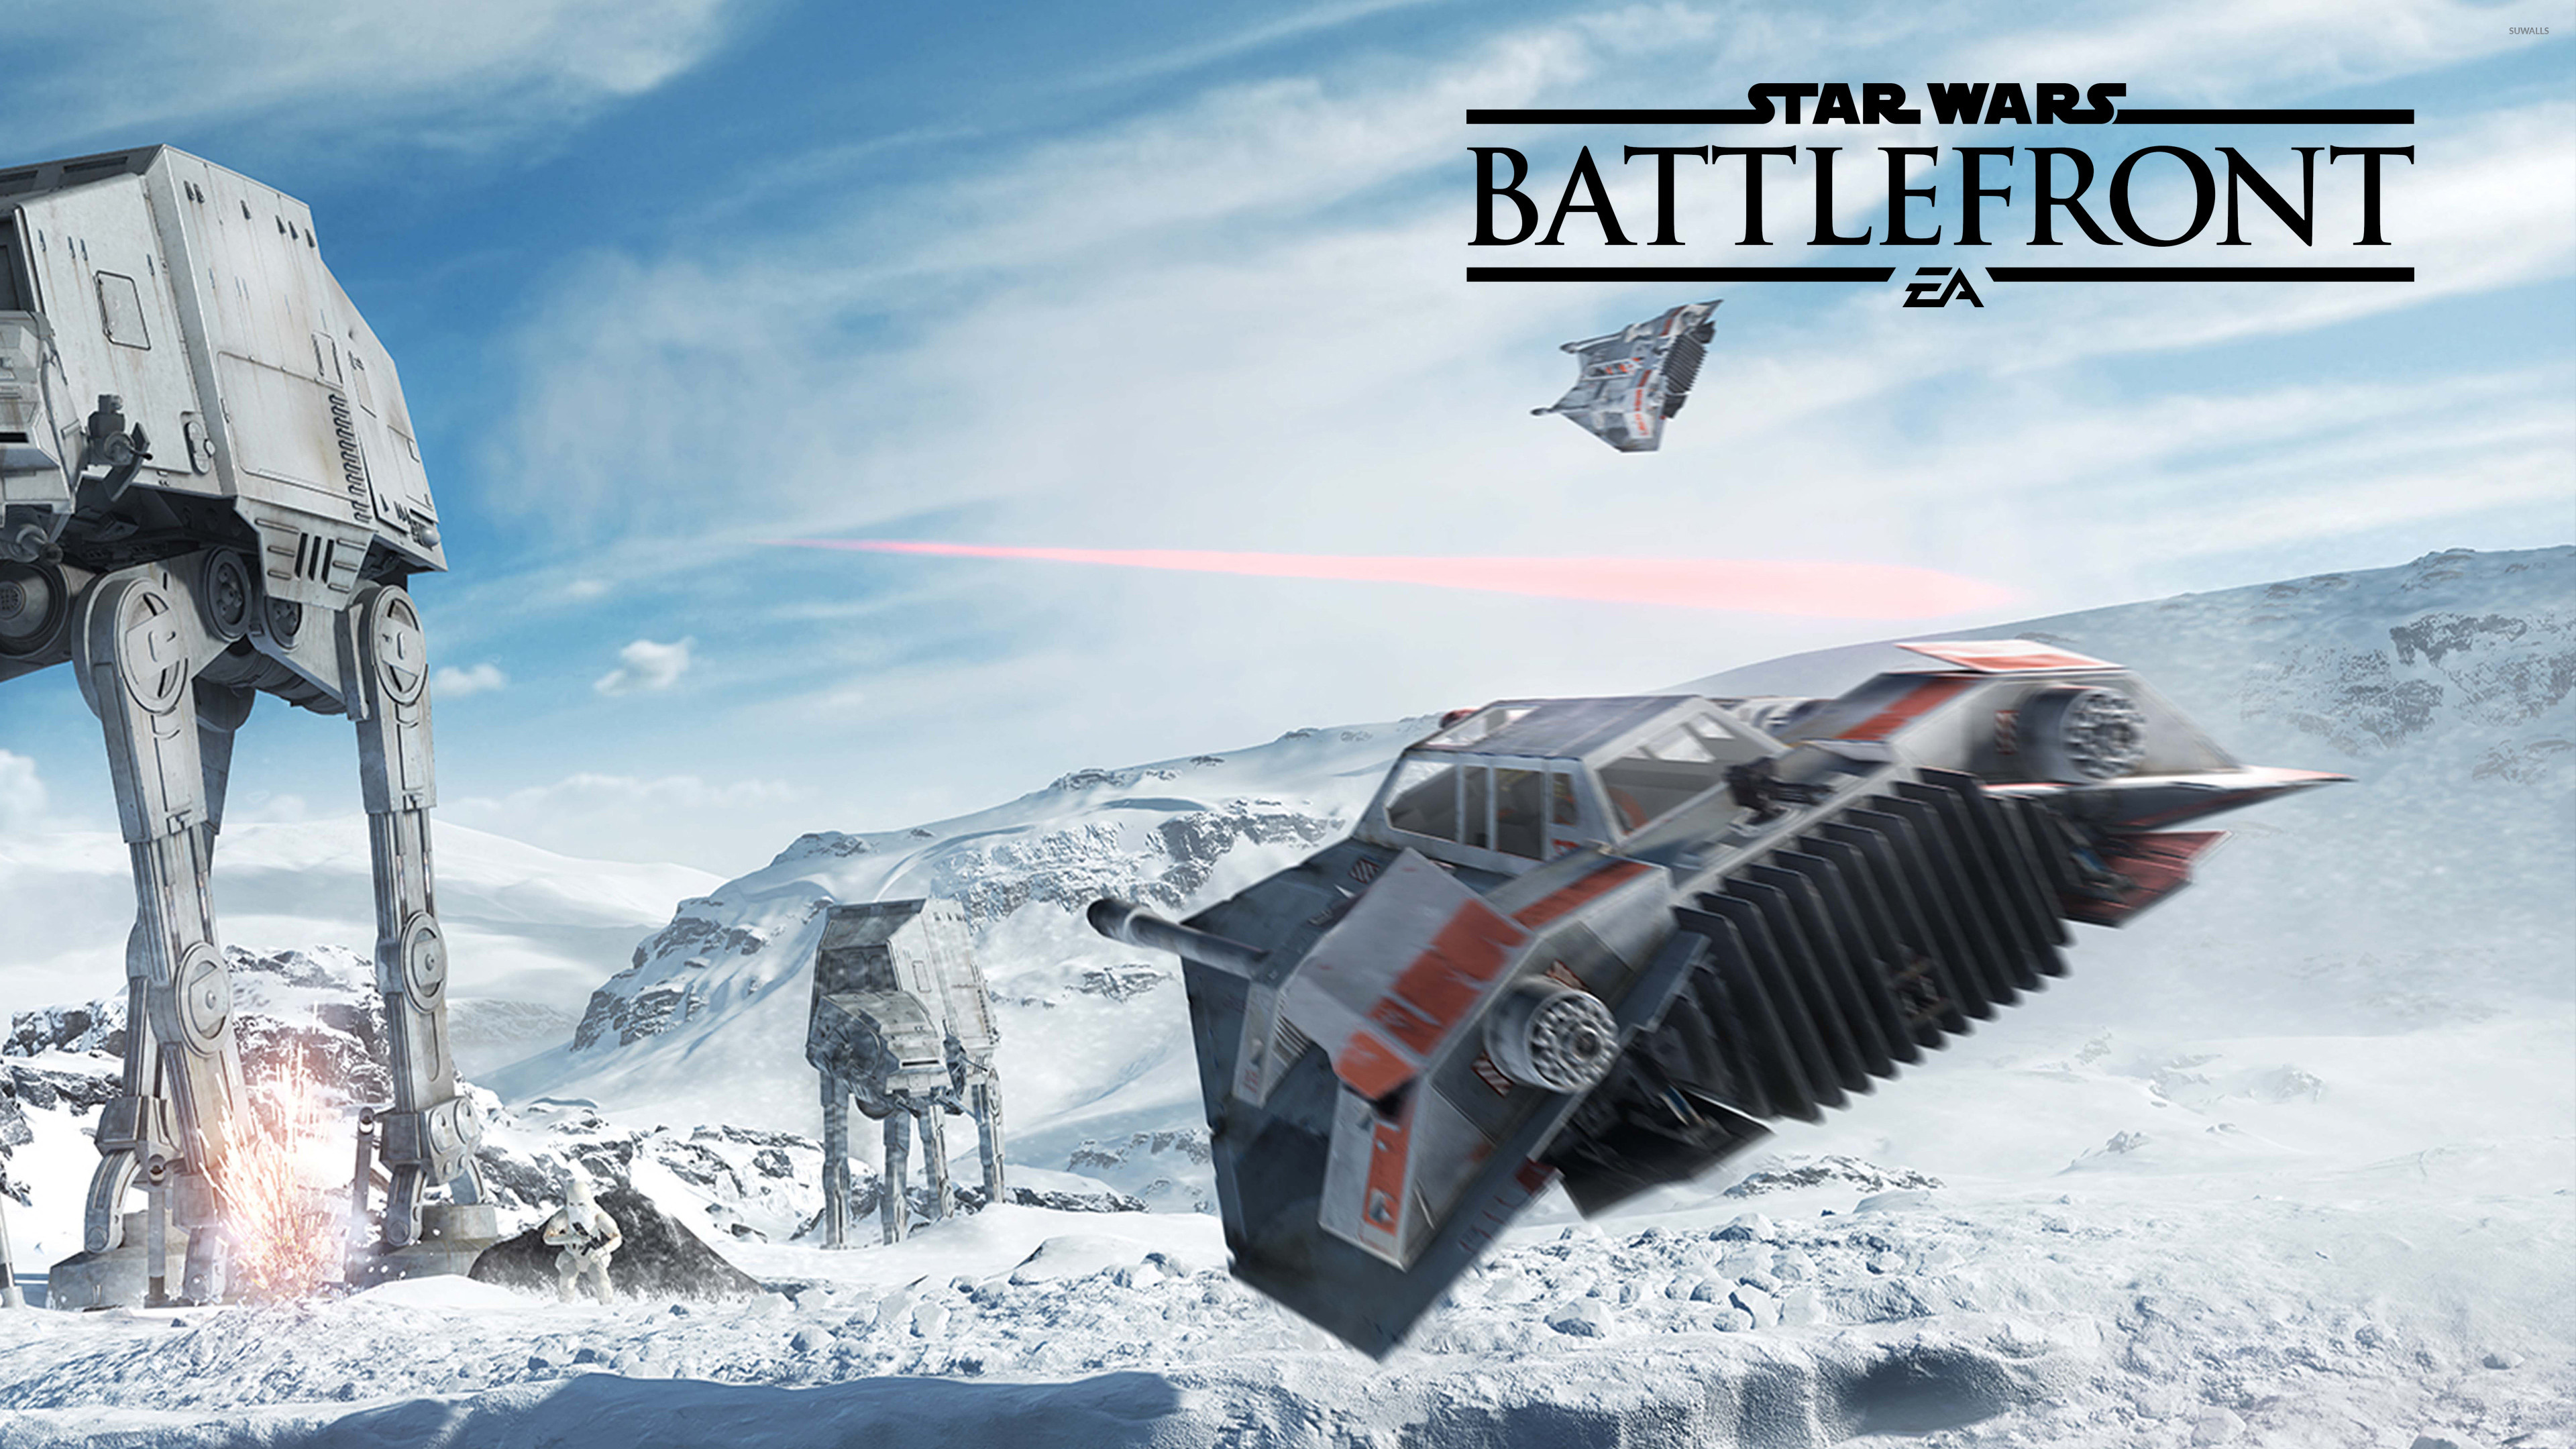 3840x2160 47 snowspeeder flying in Star Wars Battlefront wallpaper 1366x768